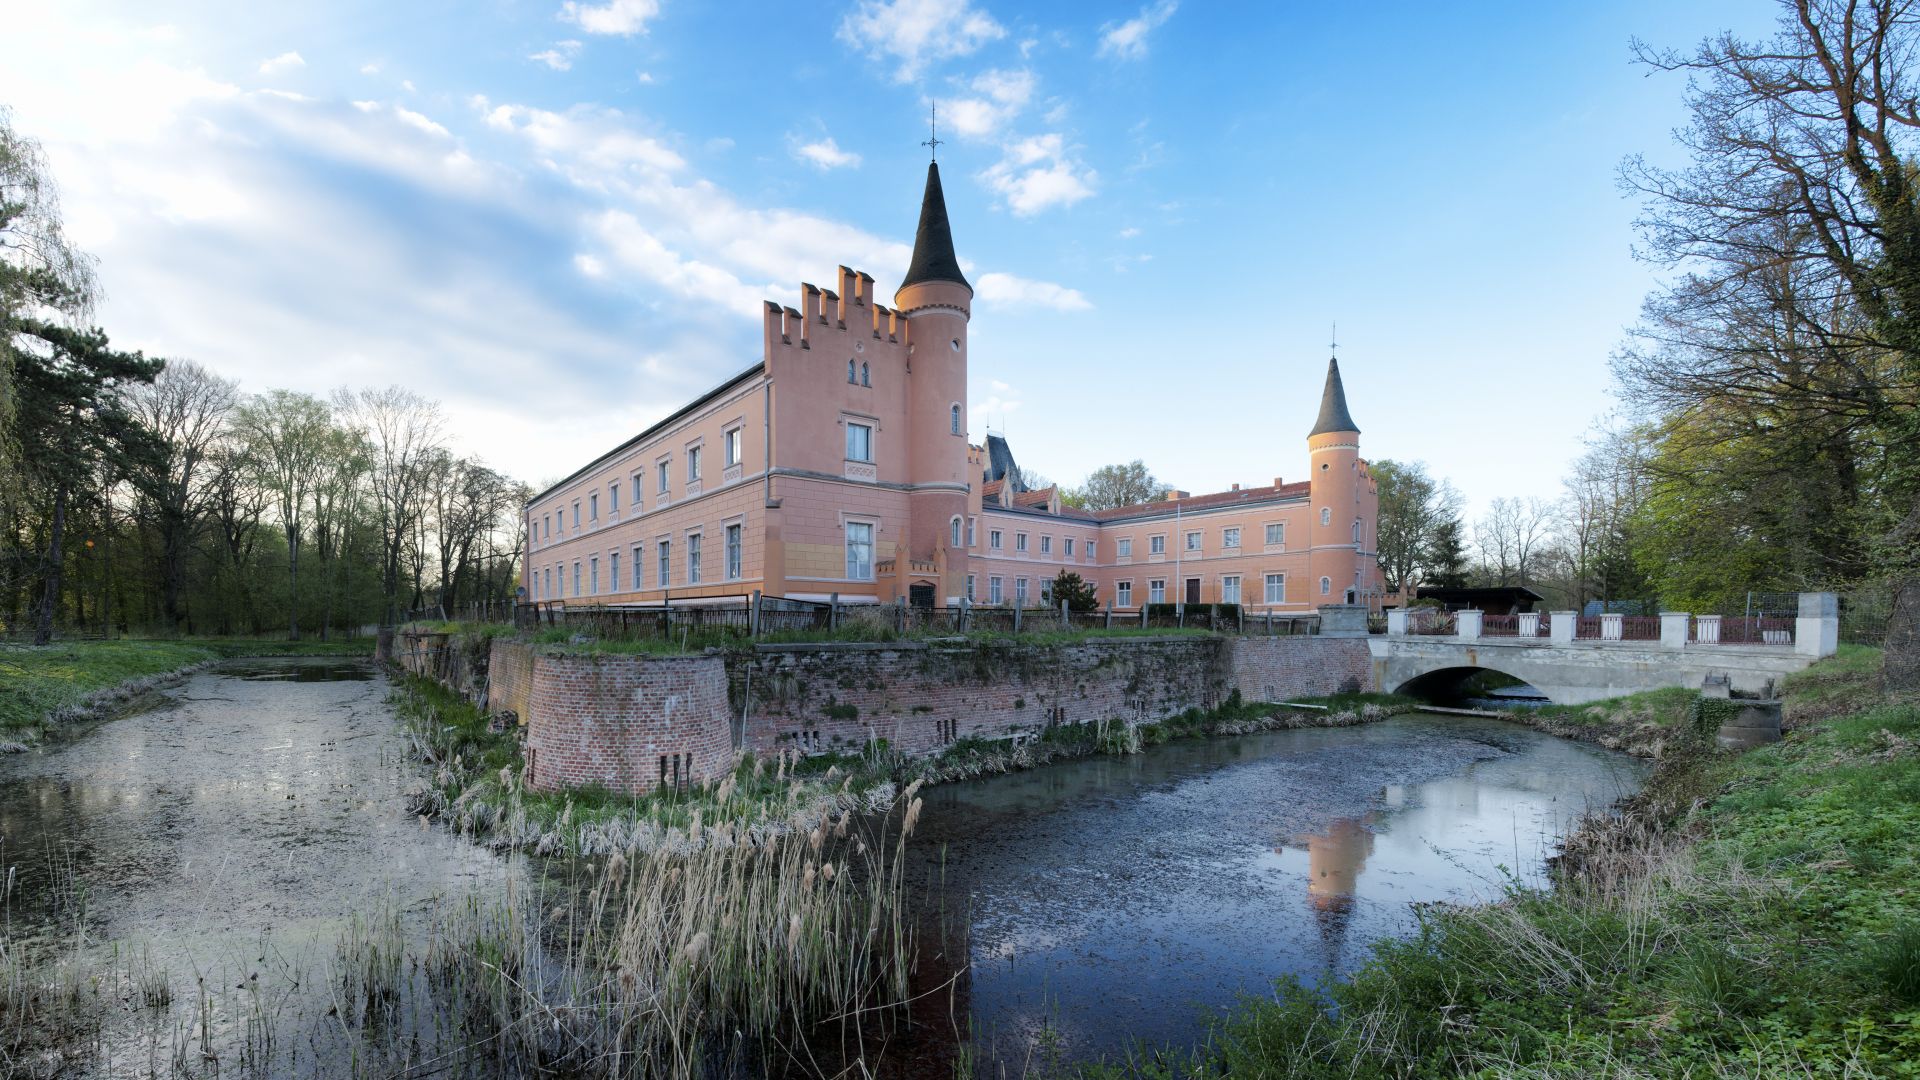 Gusow-Platkow: Schloss Gusow umgeben von einem Wassergraben